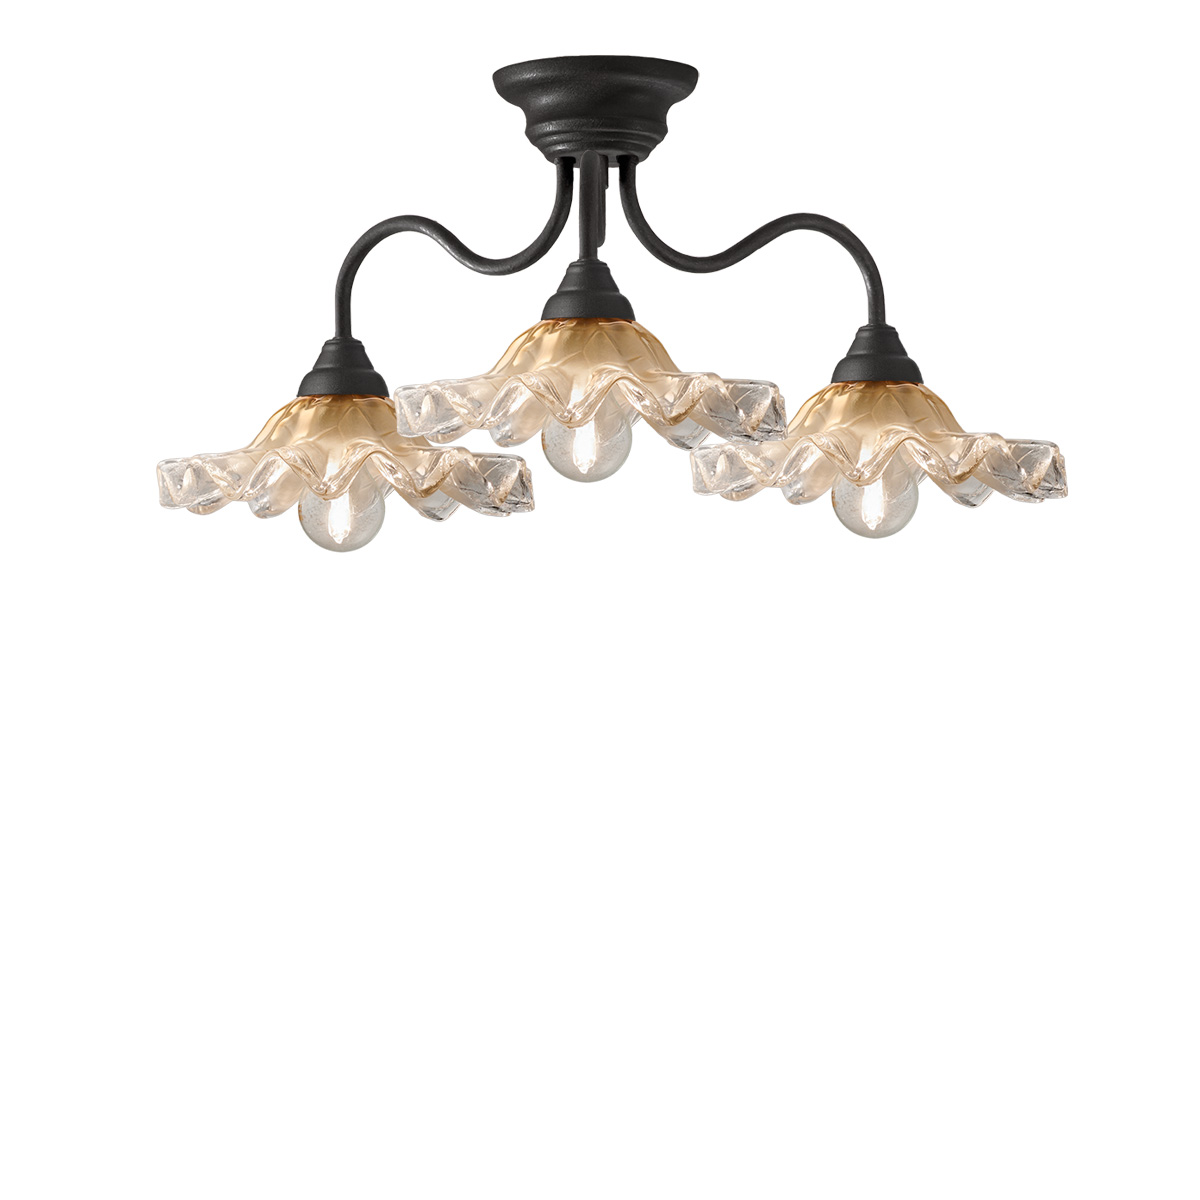 Φωτιστικό οροφής με χειροποίητα γυαλιά Μουράνο ΣΥΡΟΣ handmade Murano glass ceiling lamp